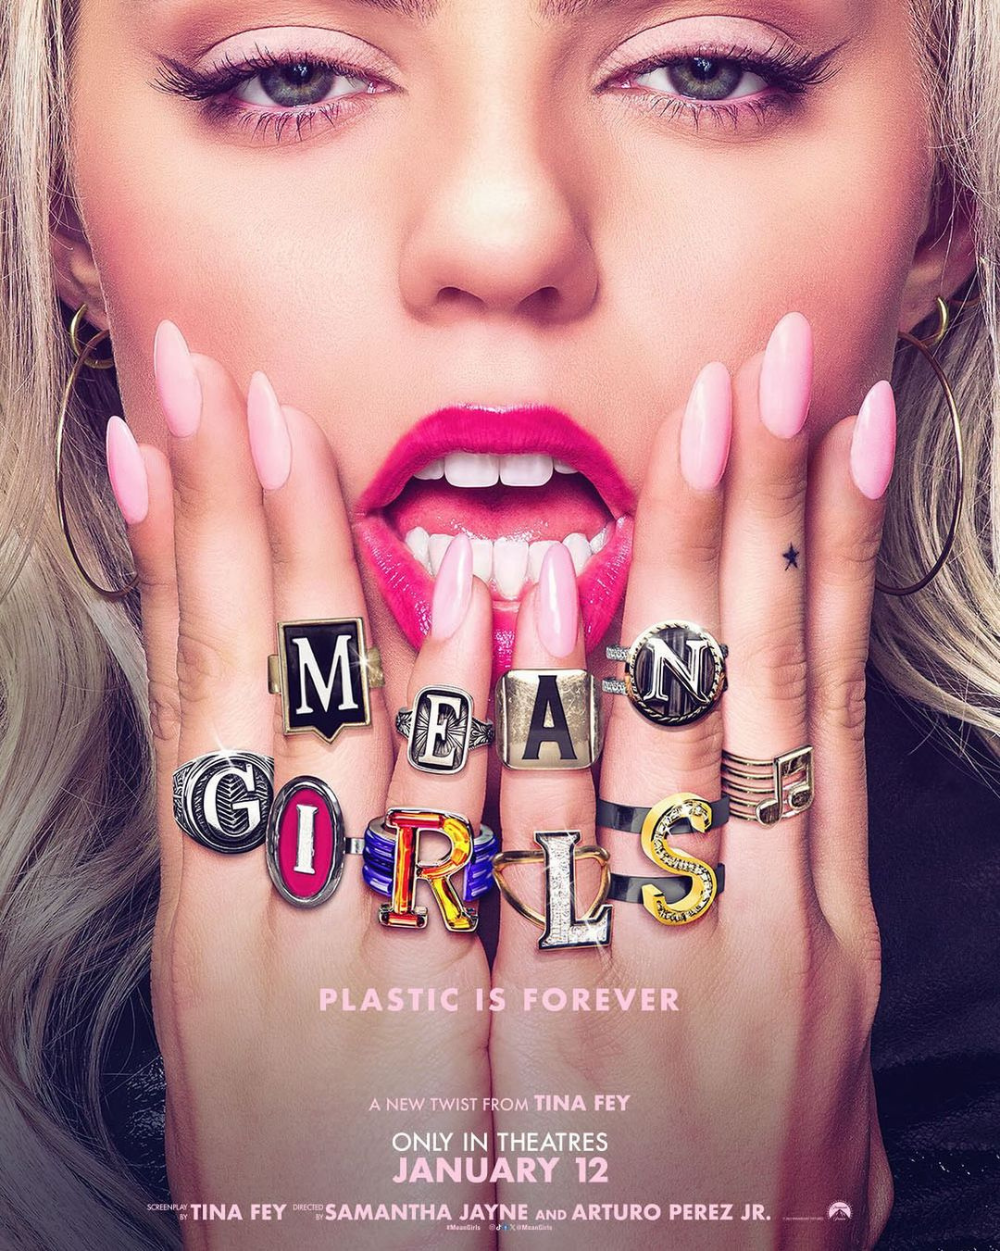 "Mean Girls": La Nueva Adaptación Musical Que Revive un Clásico